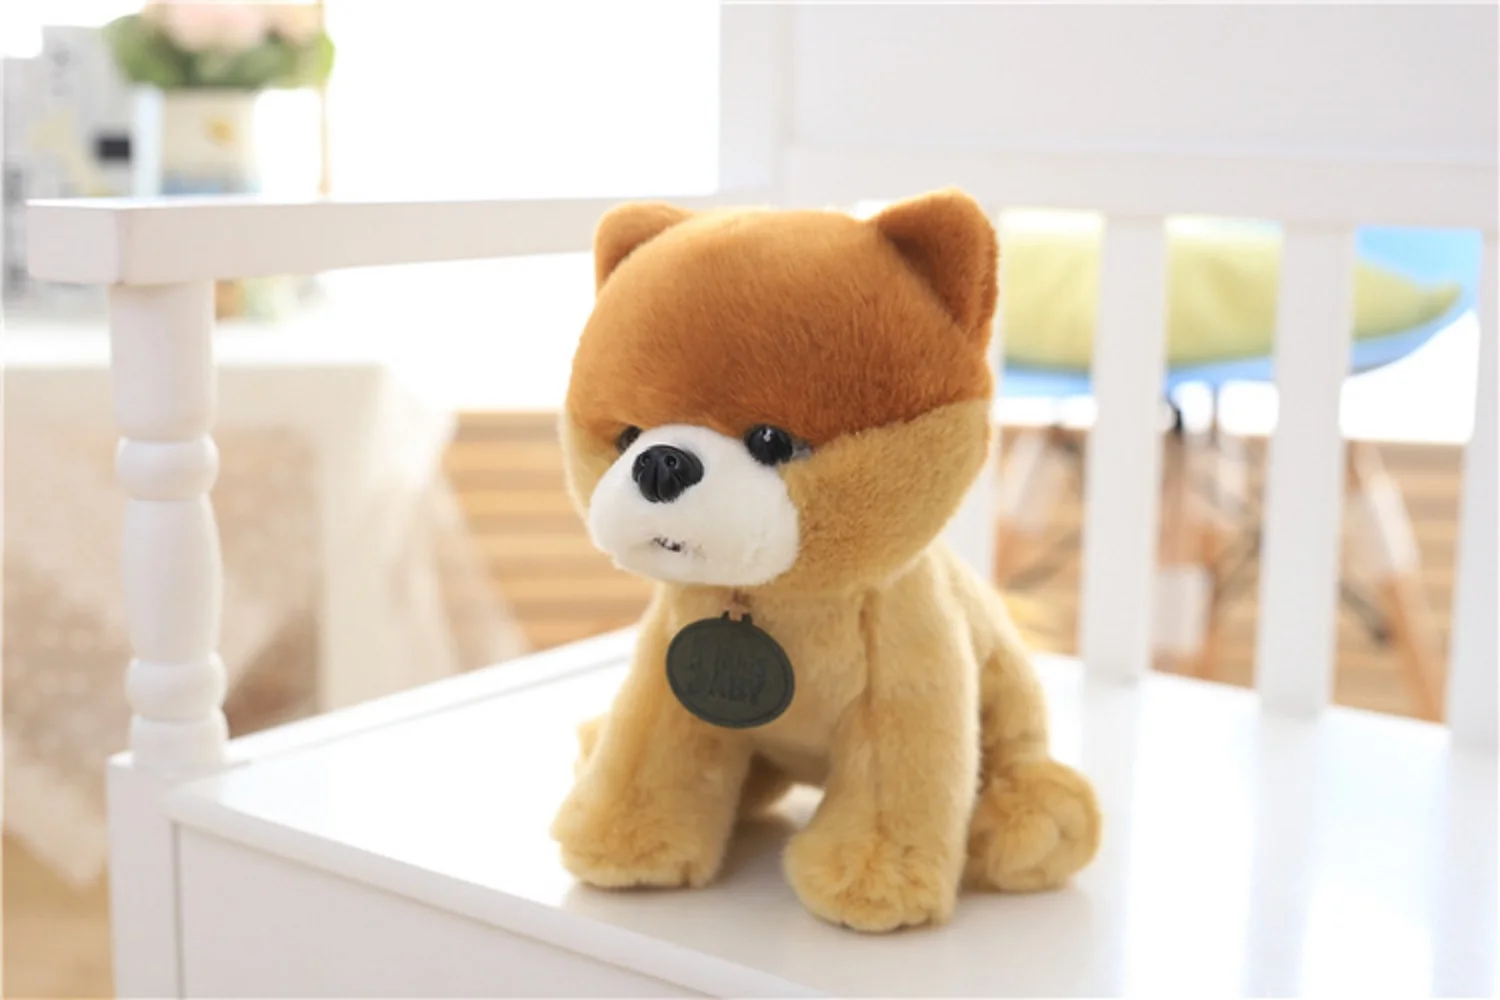 

Симпатичная плюшевая игрушка-Сиба, игрушка-сидячая собака, подарок, около 25 см, 2372